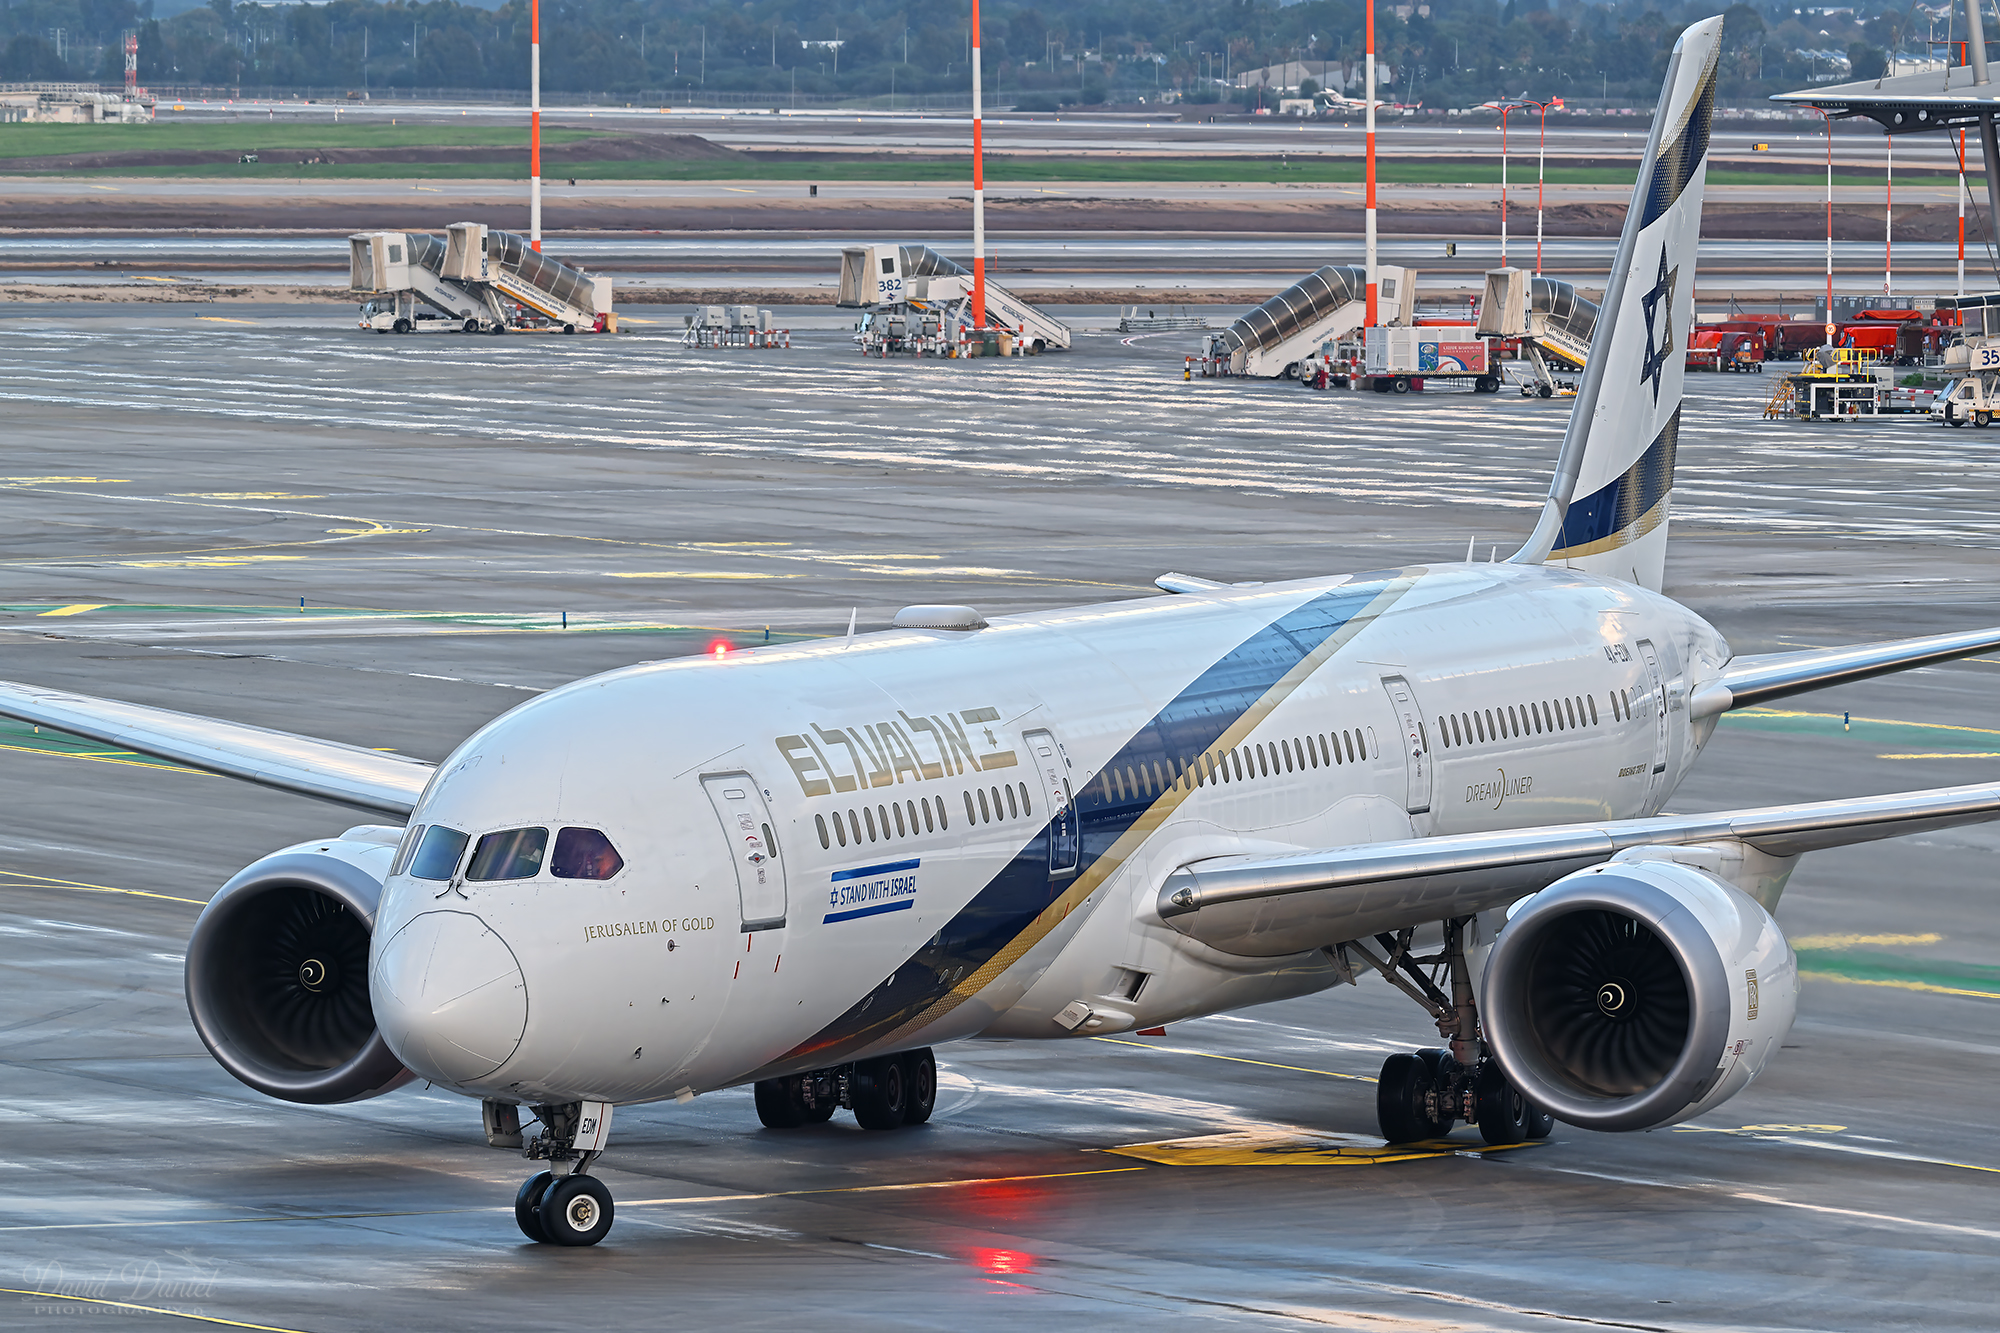 מטוס בואינג 787 של אל על - ״ירושלים של זהב״